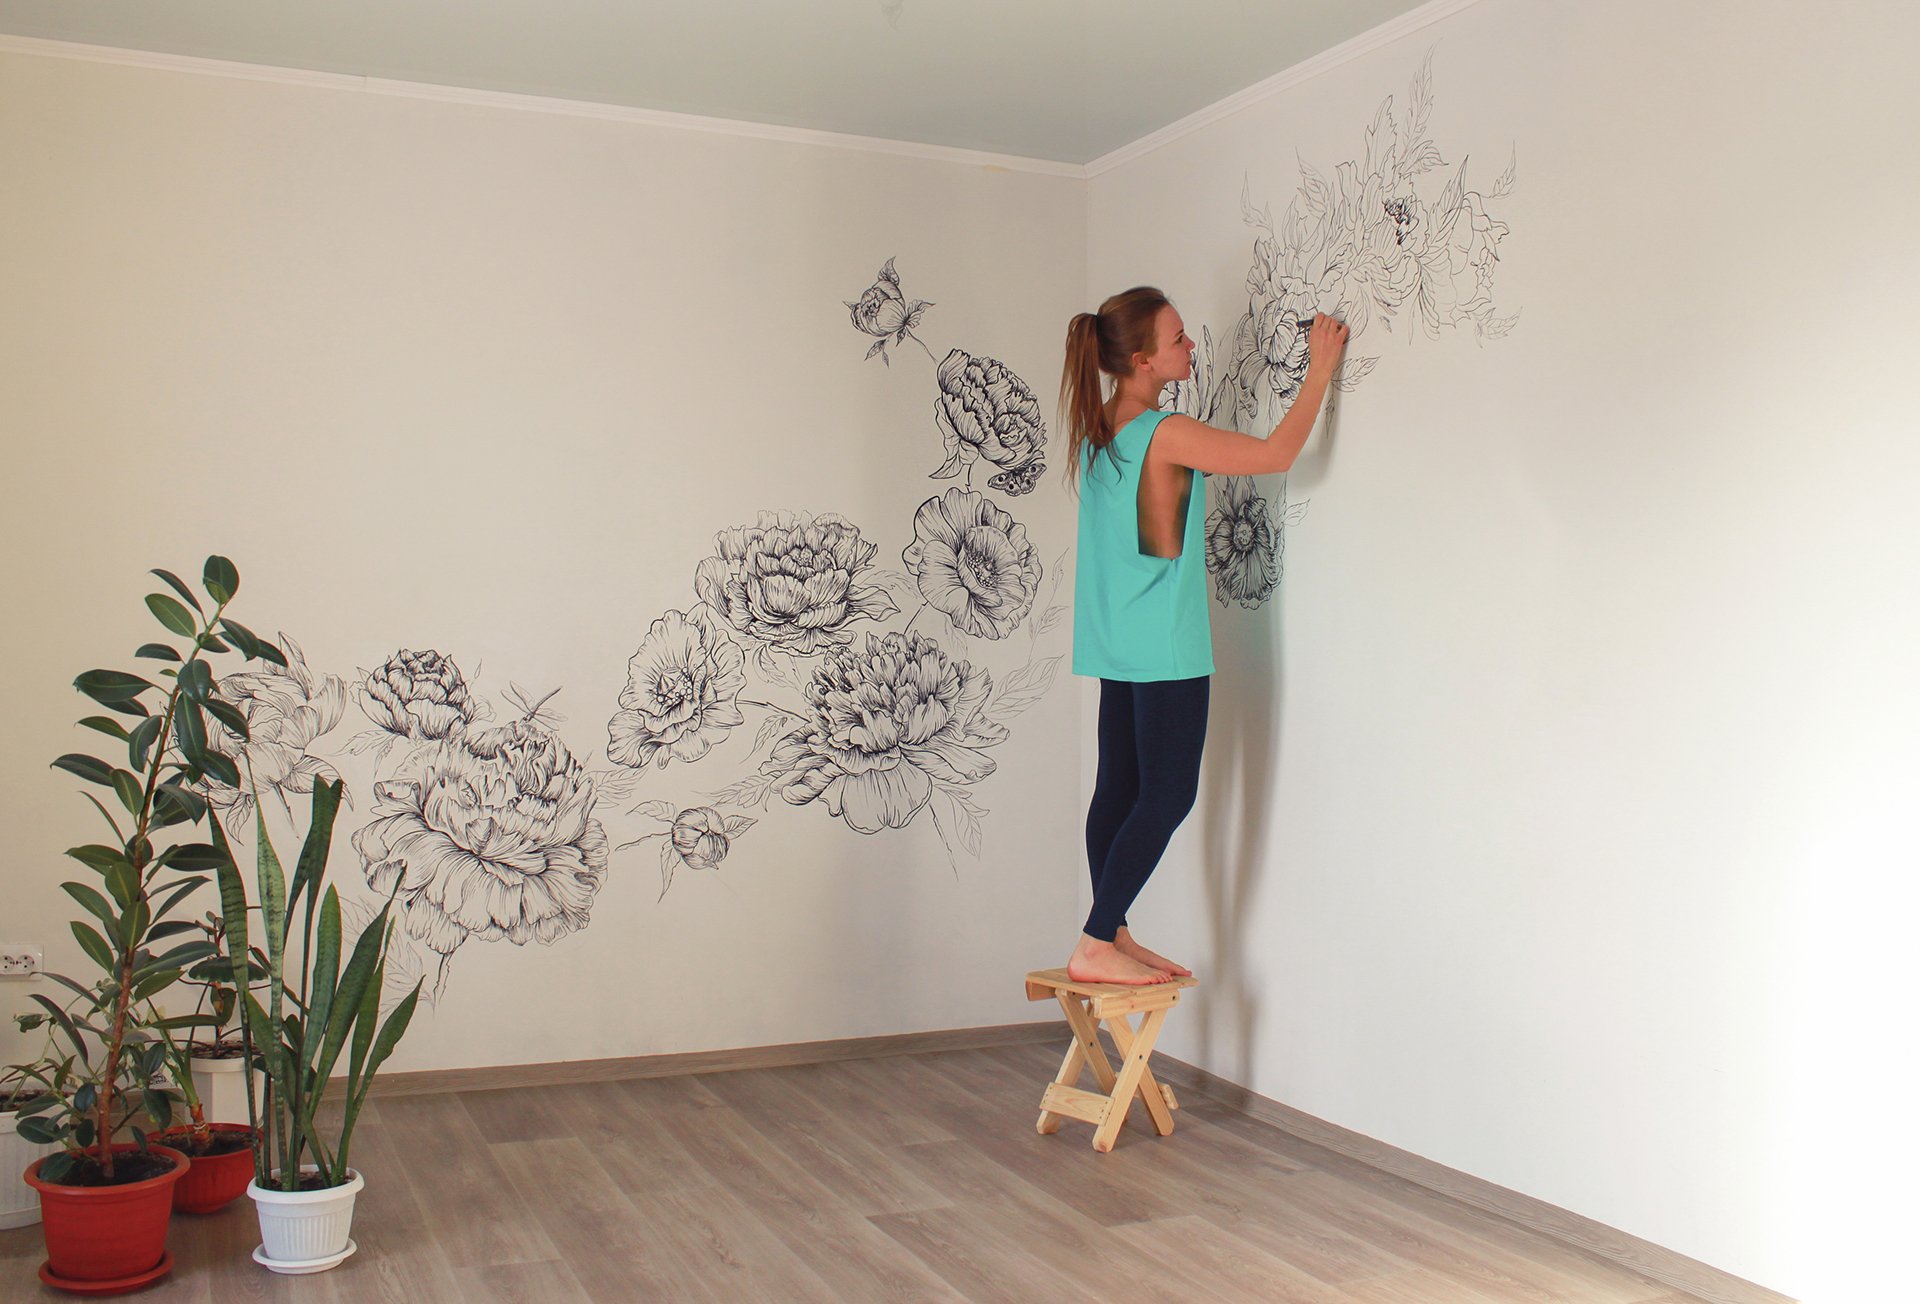 Рисунки на стенах своими руками: техника и идеи для вдохновления